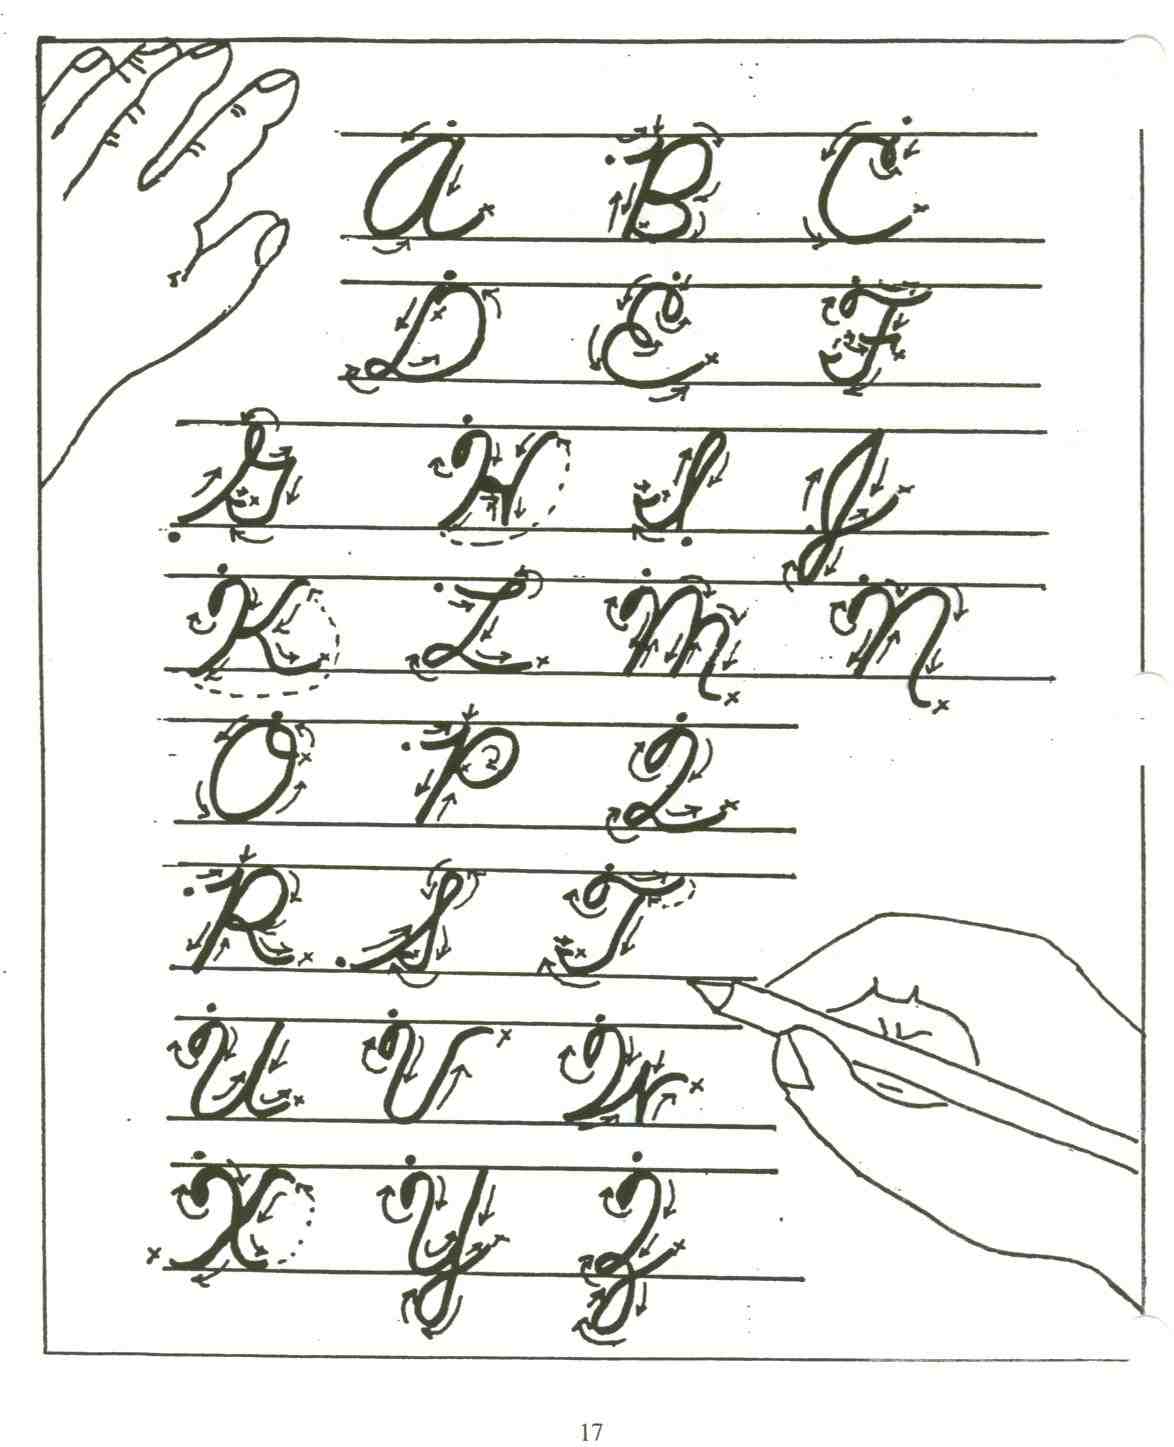 bruce ivins handwriting analysis